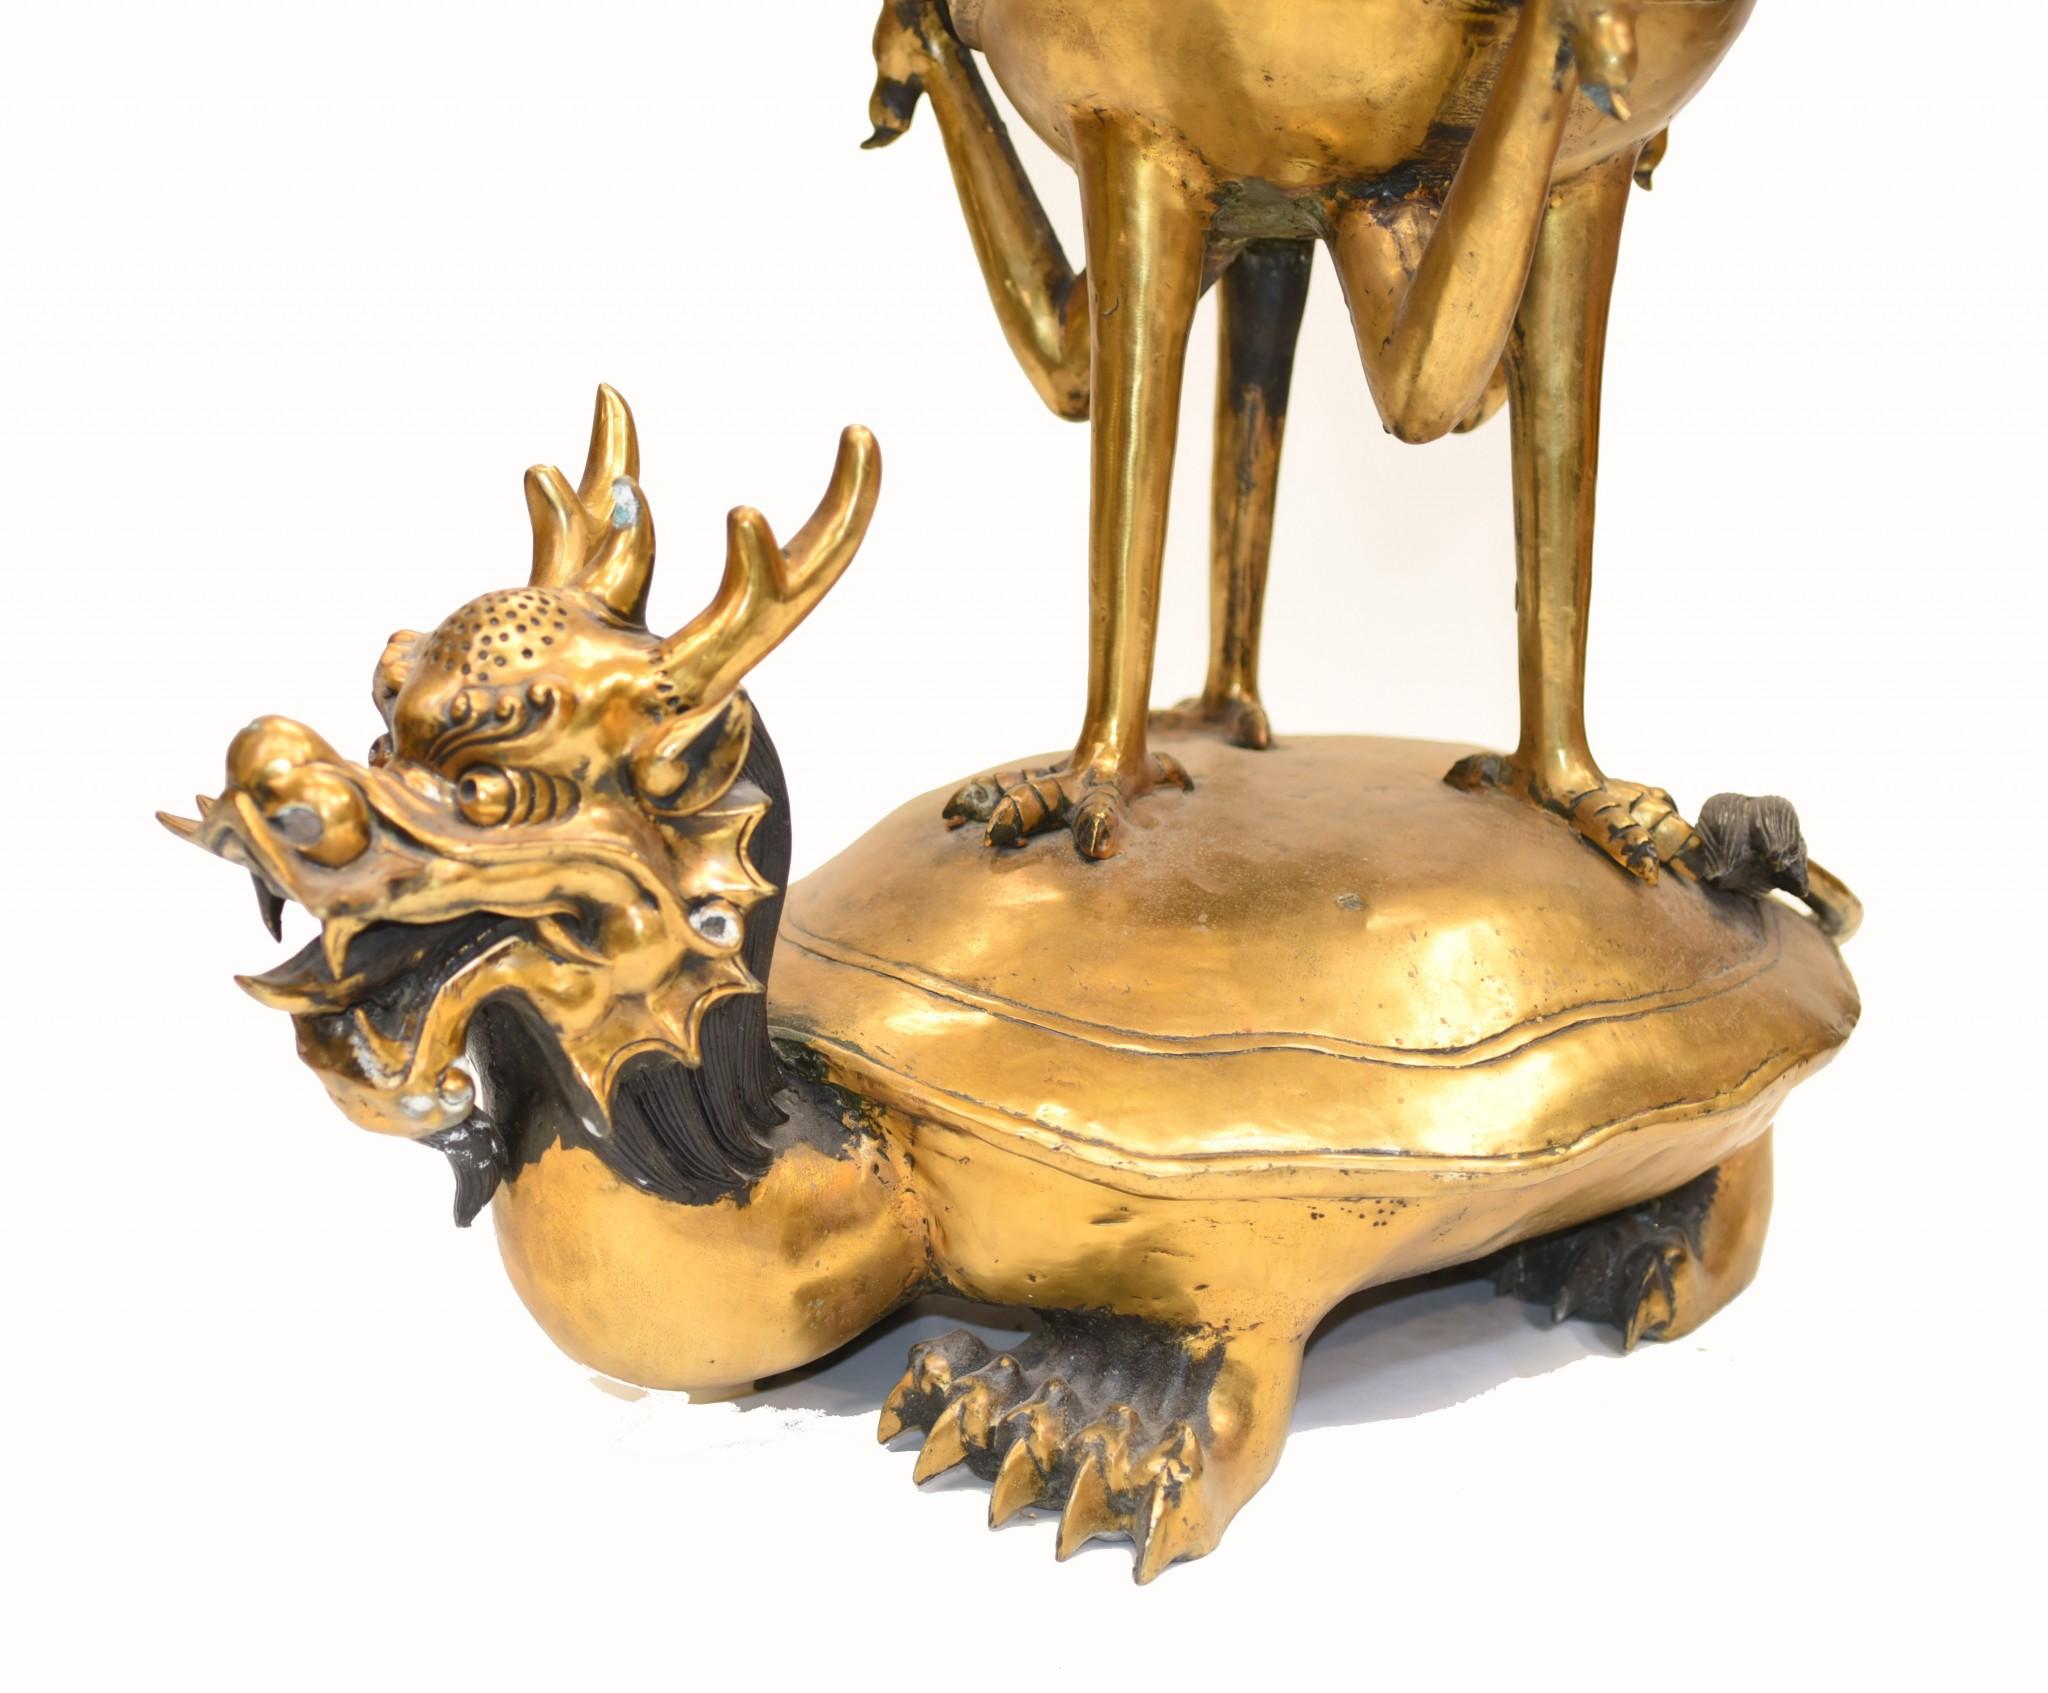 - Skurriler chinesischer Tempel-Räucherstäbchenbrenner aus Bronze
- In Form eines Drachen-Schildkrötenwesens, aus dem die Kraniche sprießen
- Gute Größe  mit über einem Meter Höhe - 96 CM
- Hätte wahrscheinlich ursprünglich in einem Tempel